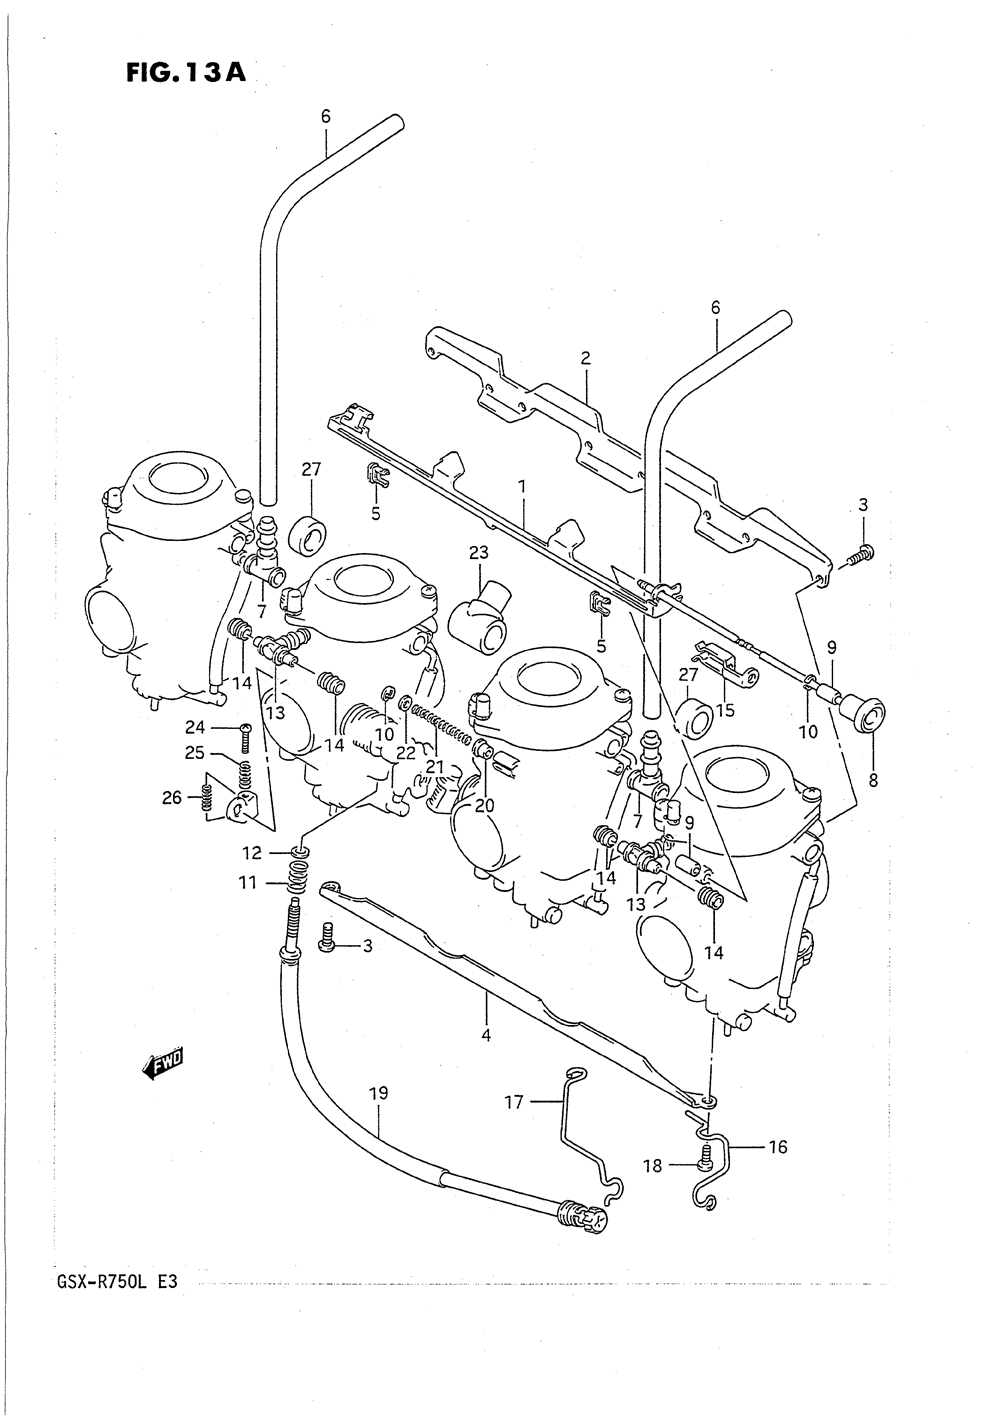 Carburetor fittings (model l